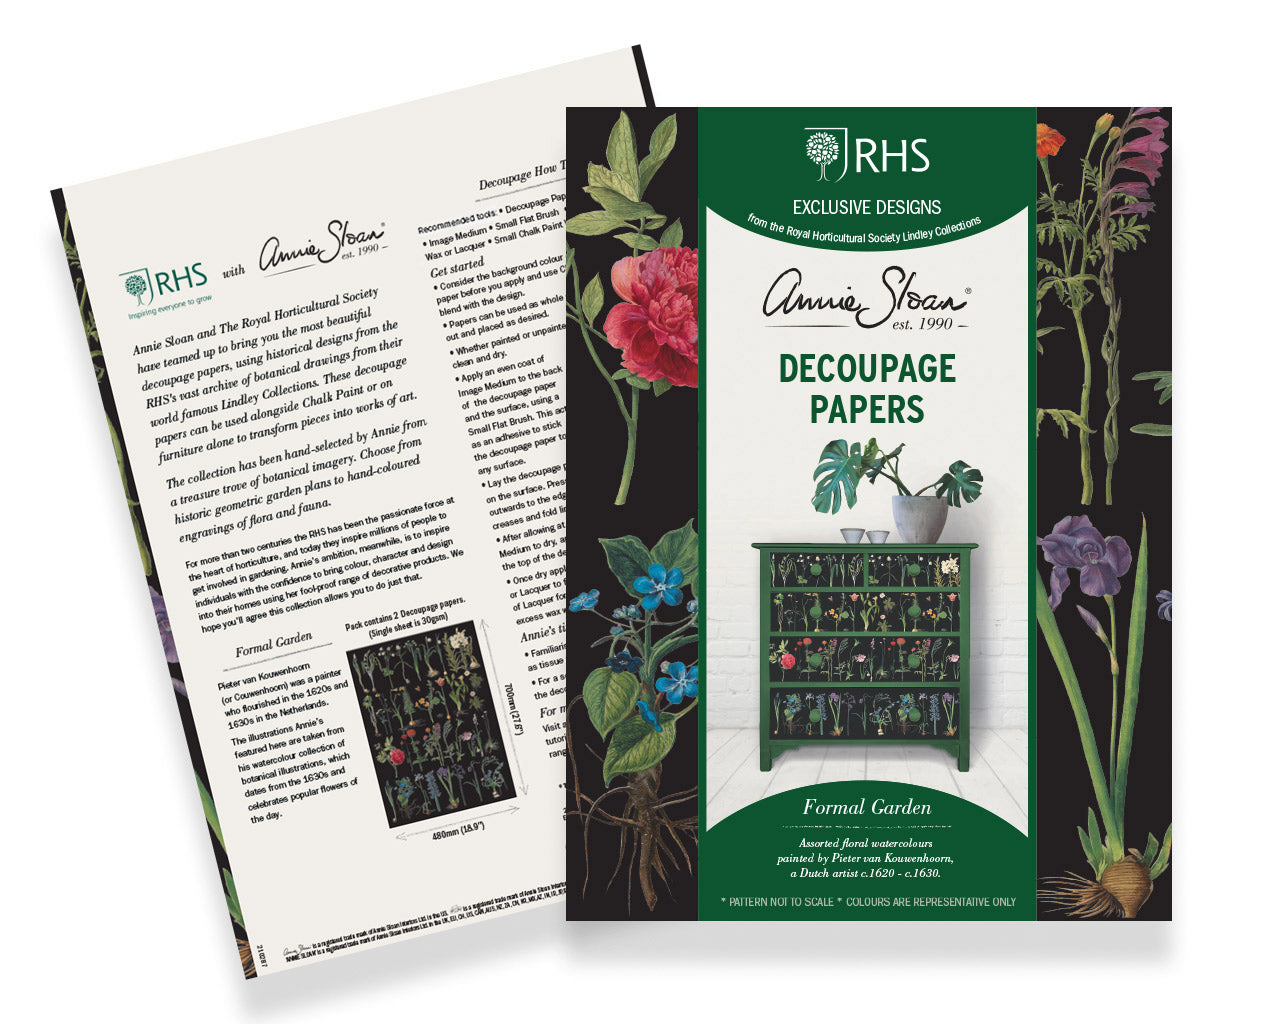 Detta decopagepapper består av komplicerad botanisk blommig som Annie Sloan har tagit fram tillsammans med Royal Horticultural Society (RHS) Decoupage Paper. 